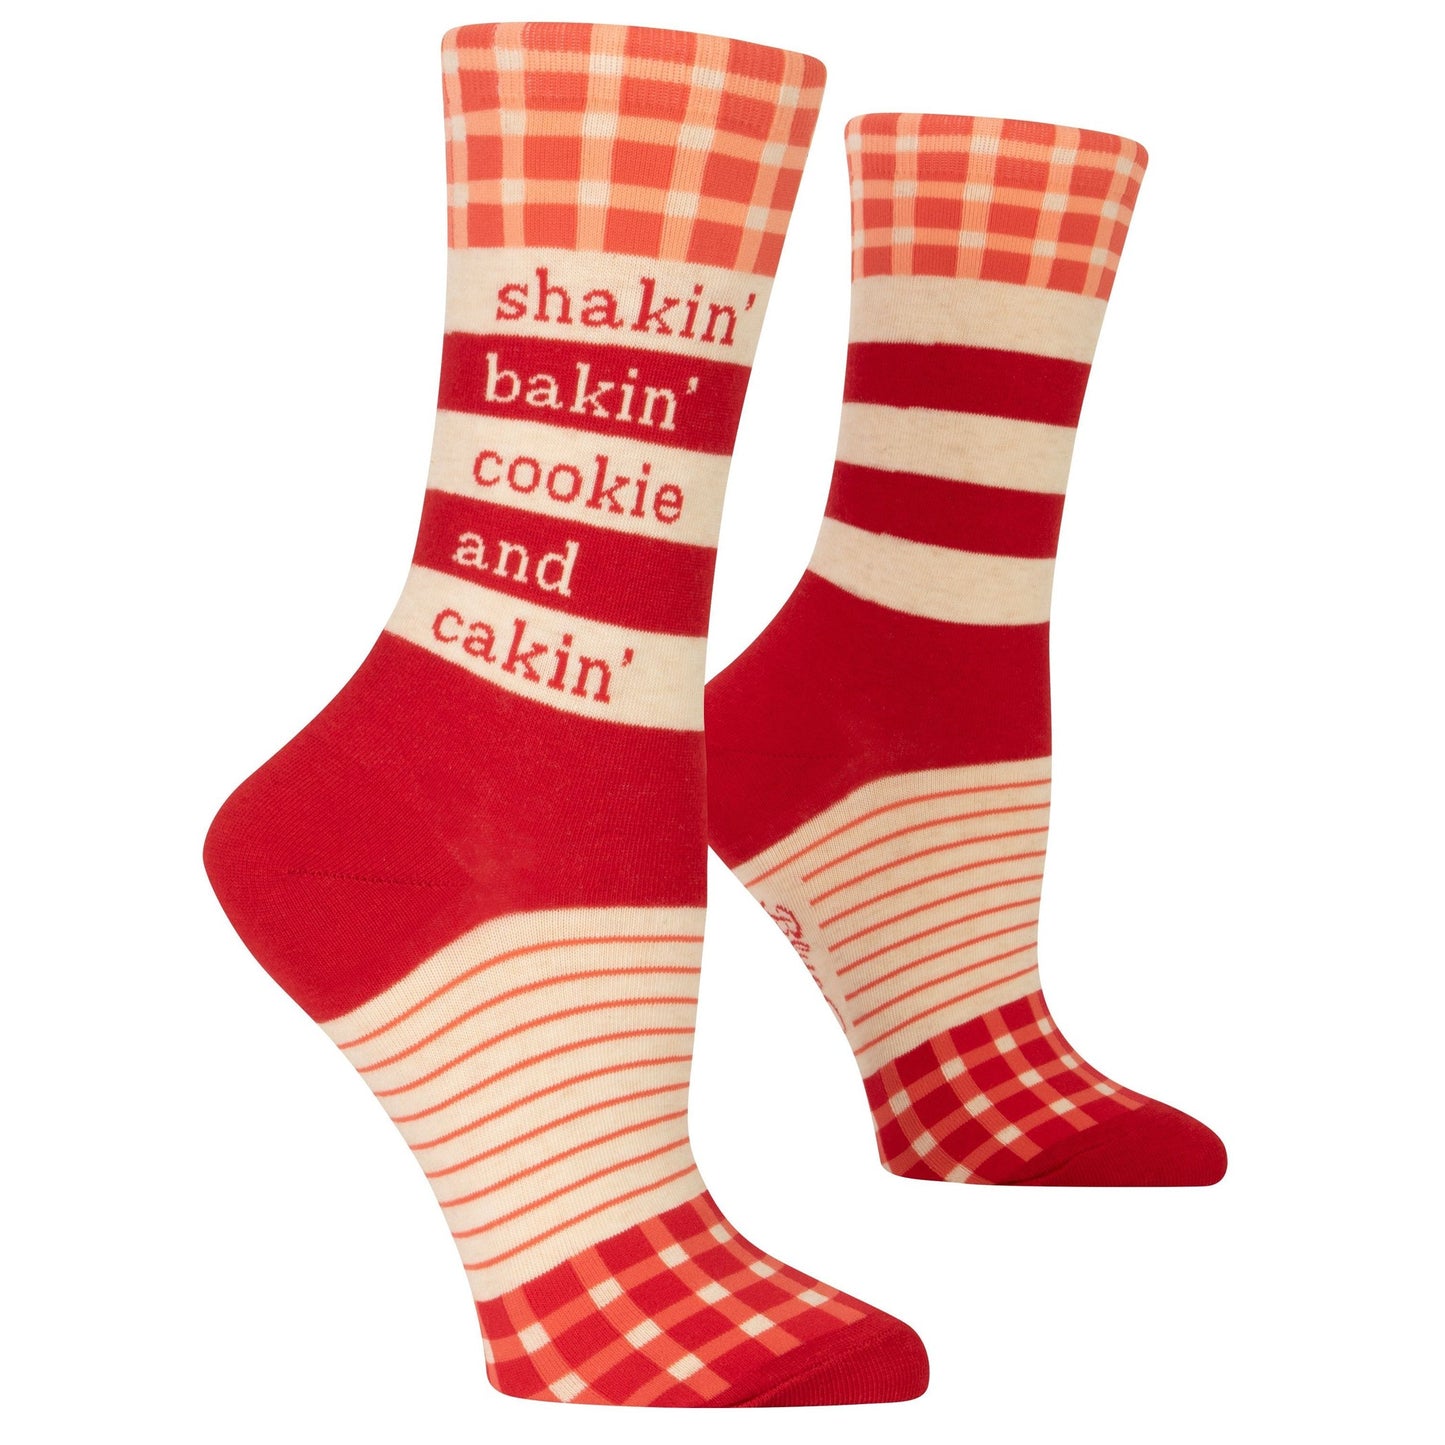 Shakin', Bakin', Cookie, & Cakin' Women's Crew Novelty Dress Socks